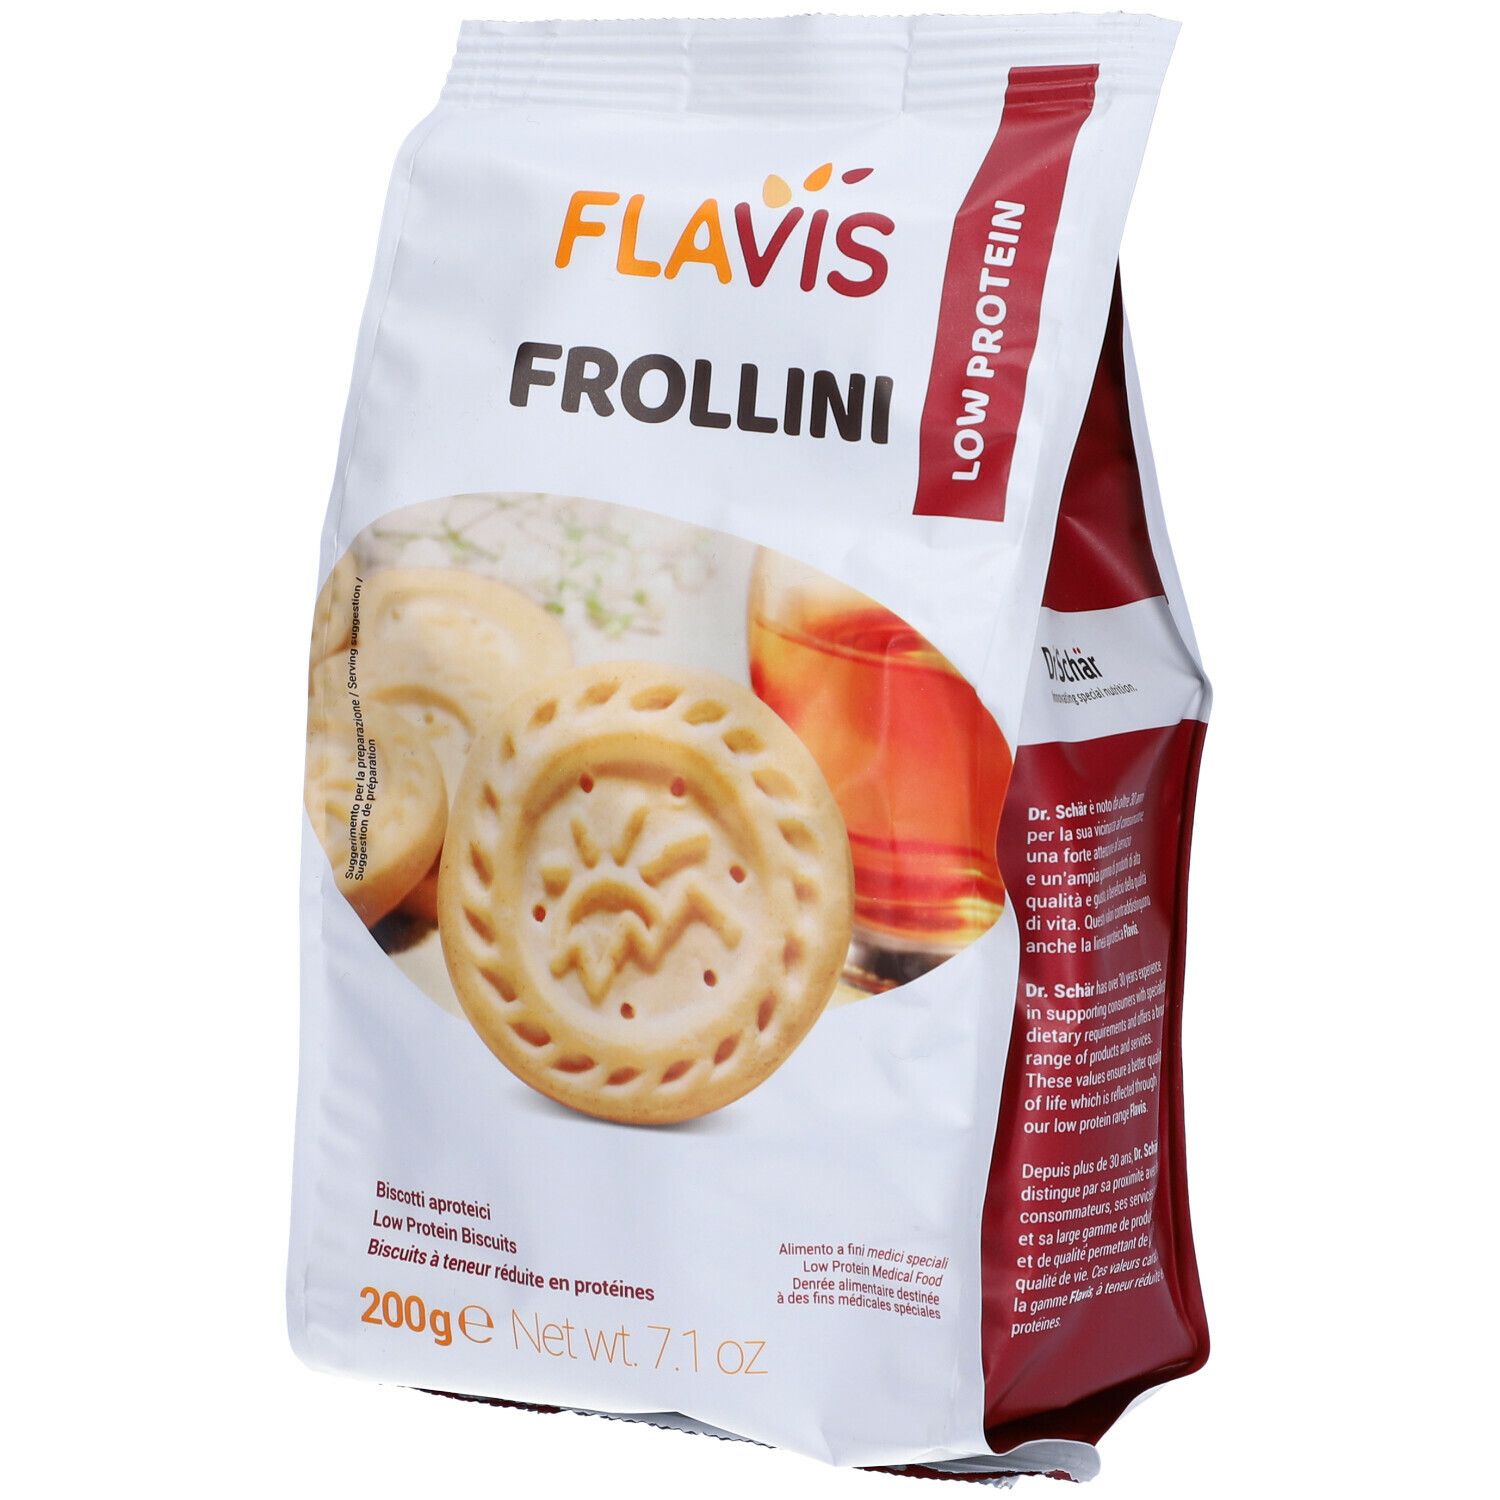 FLAVIS Frollini